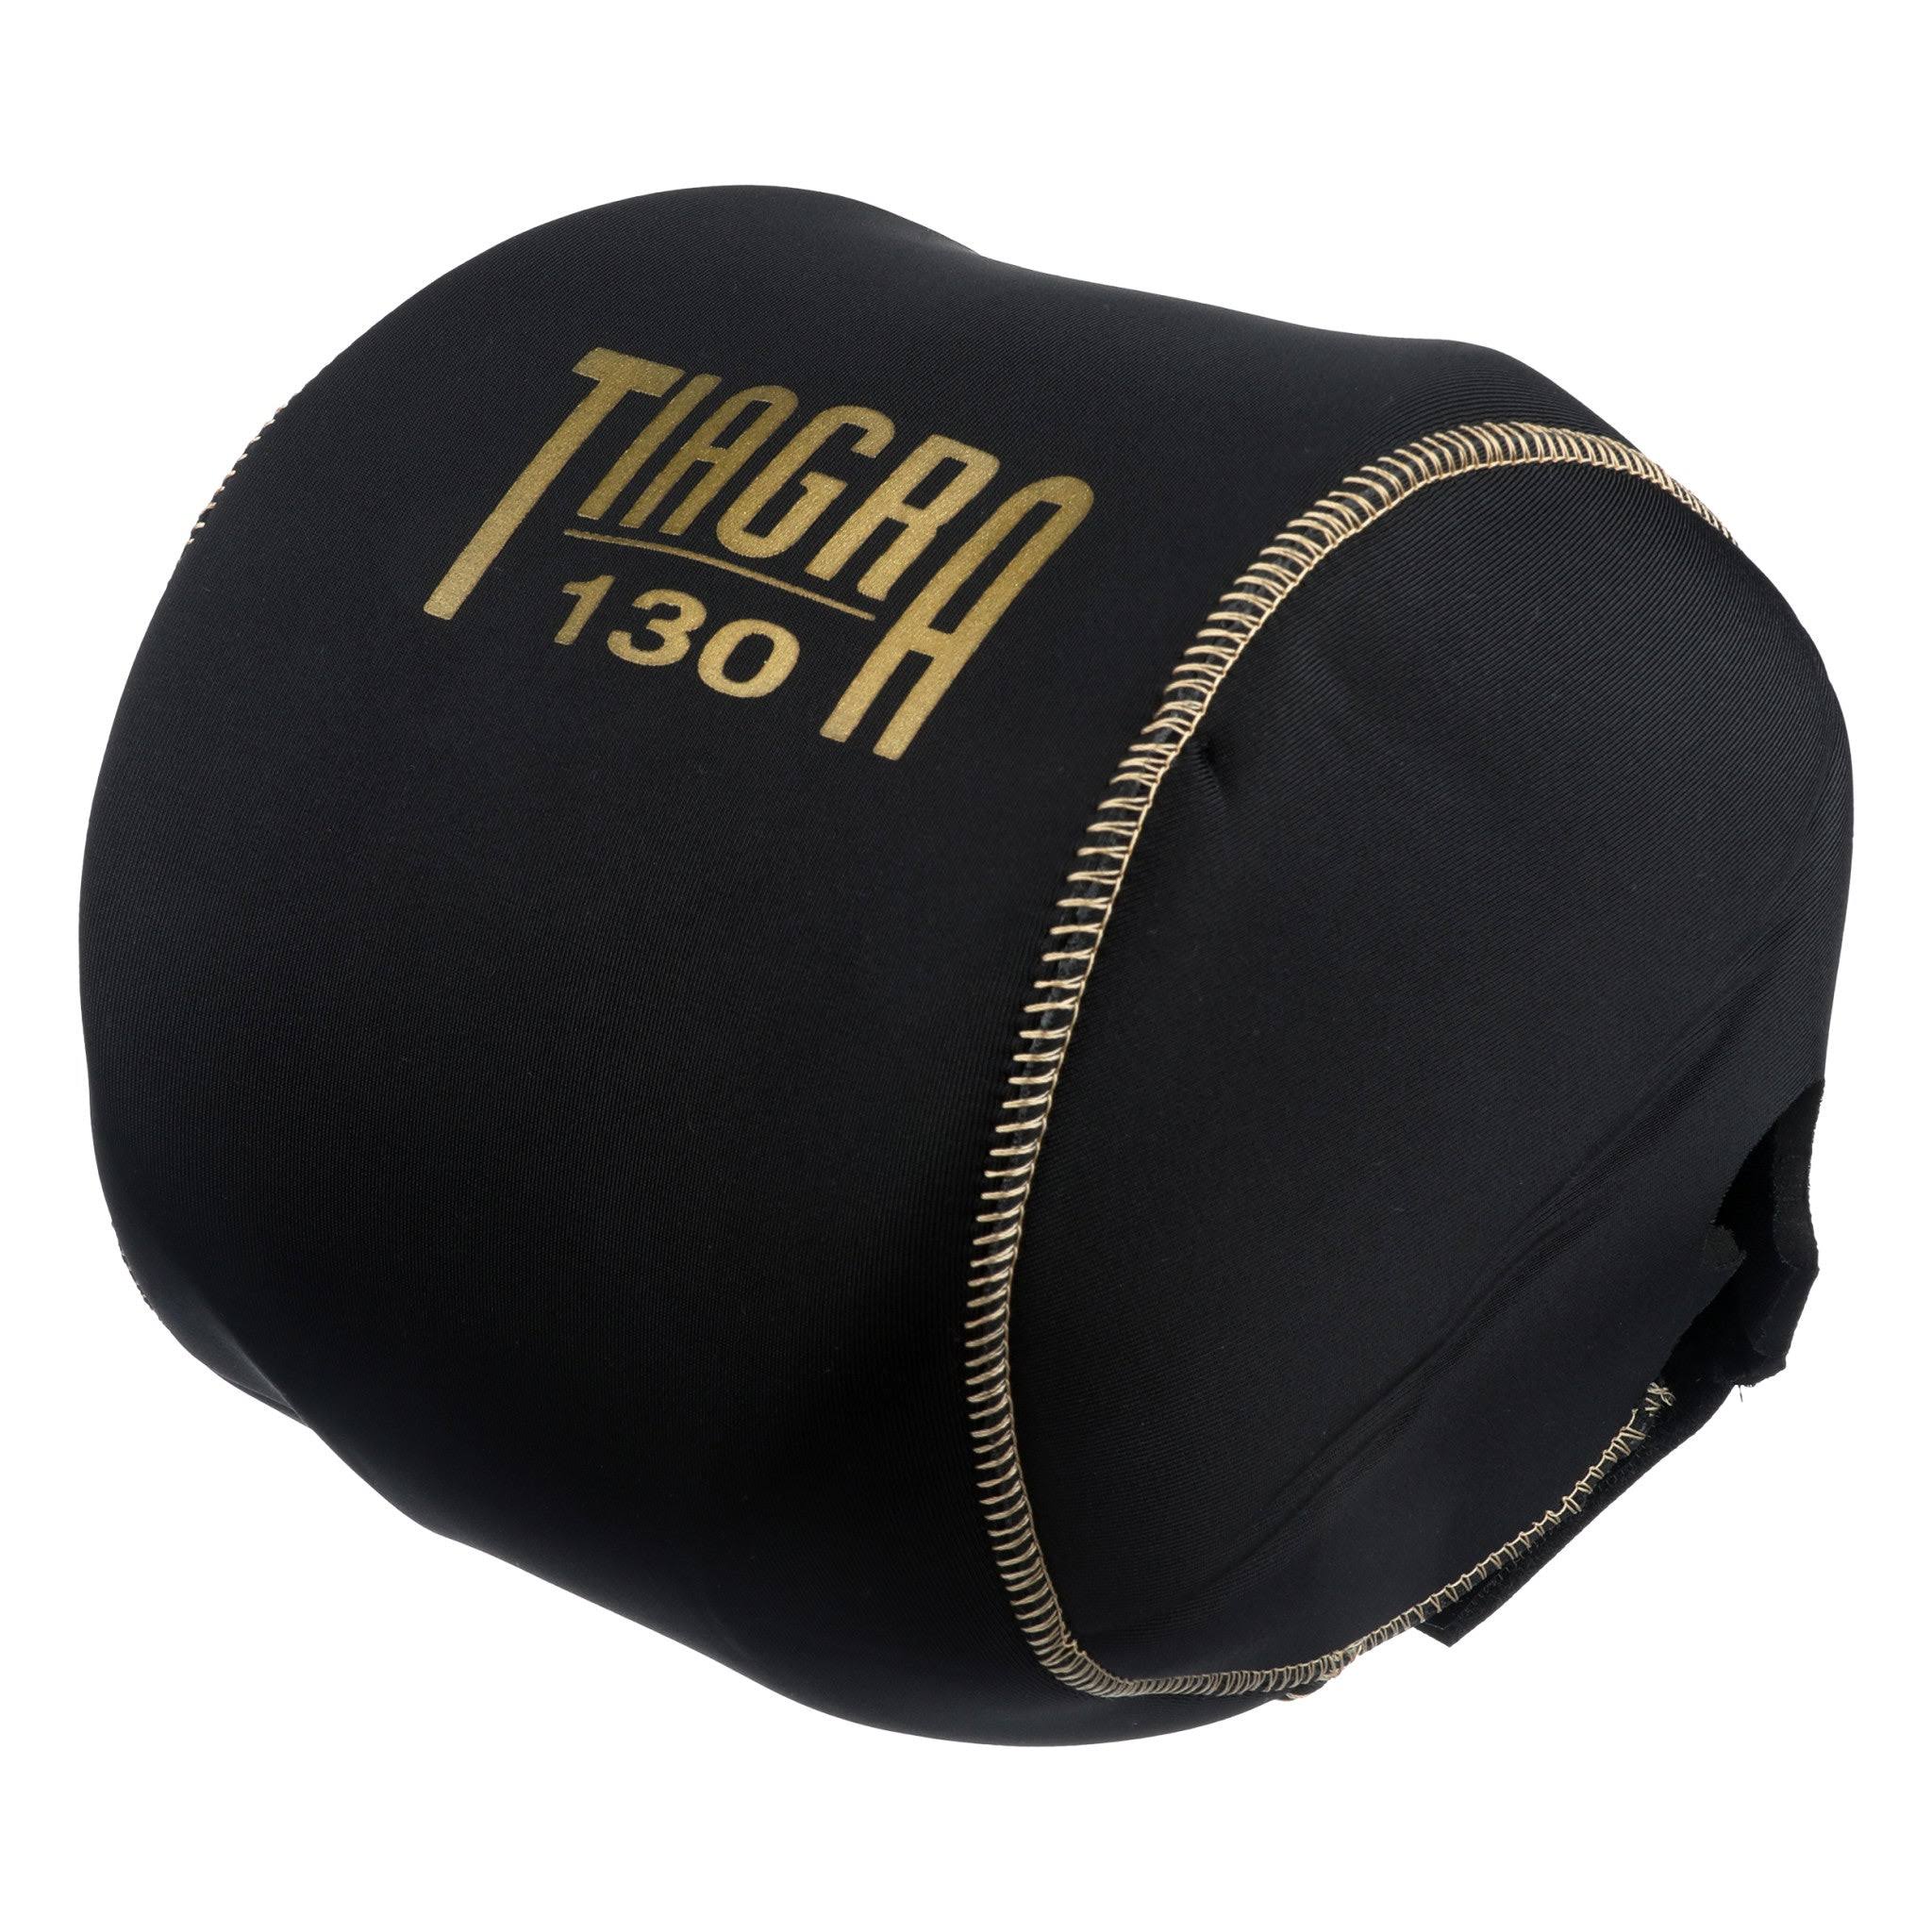 Shimano Tiagra 130 Reel Cover Black